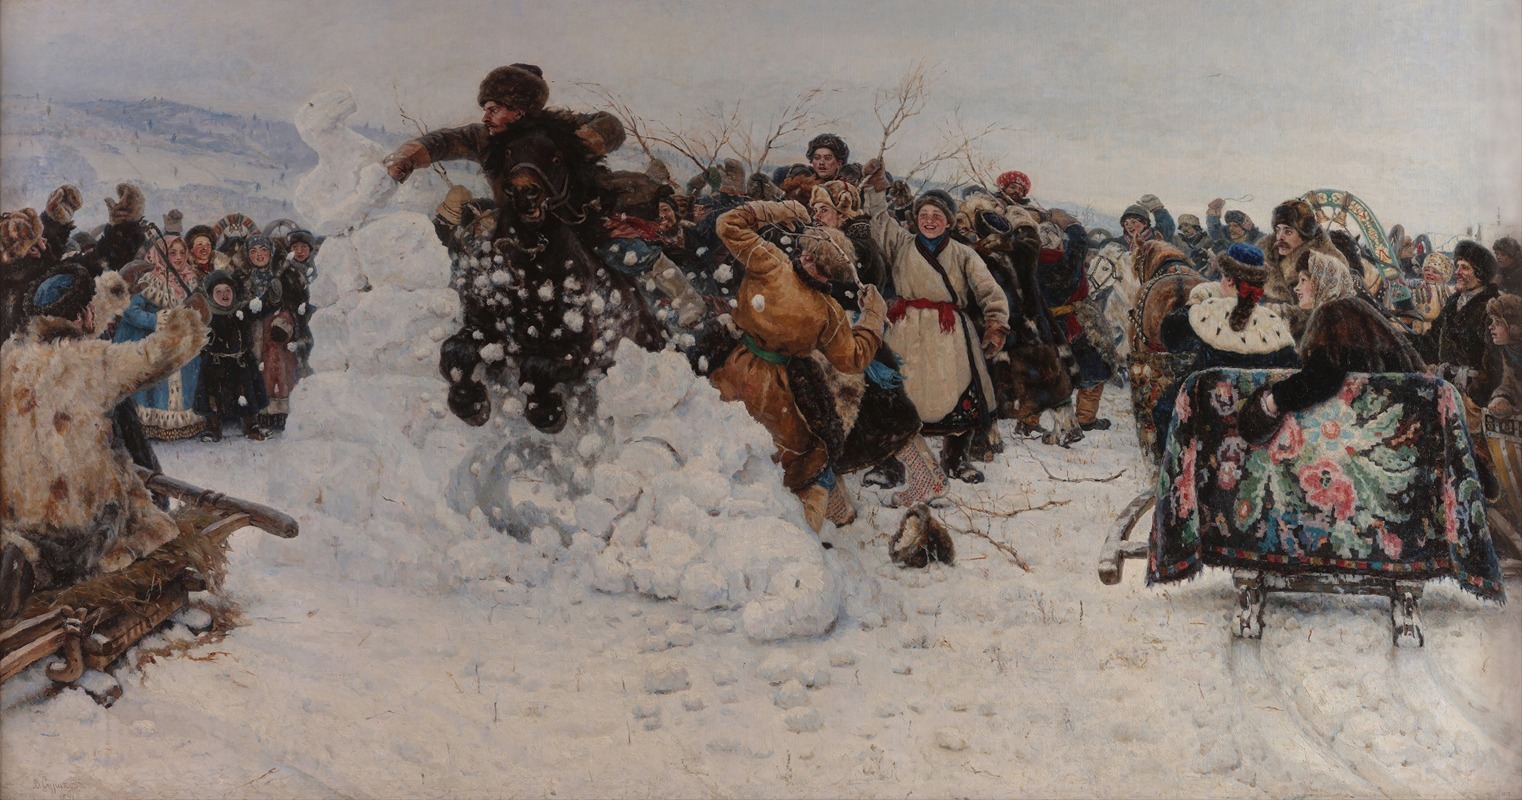 Vasily Surikov - Taking a Snow Town